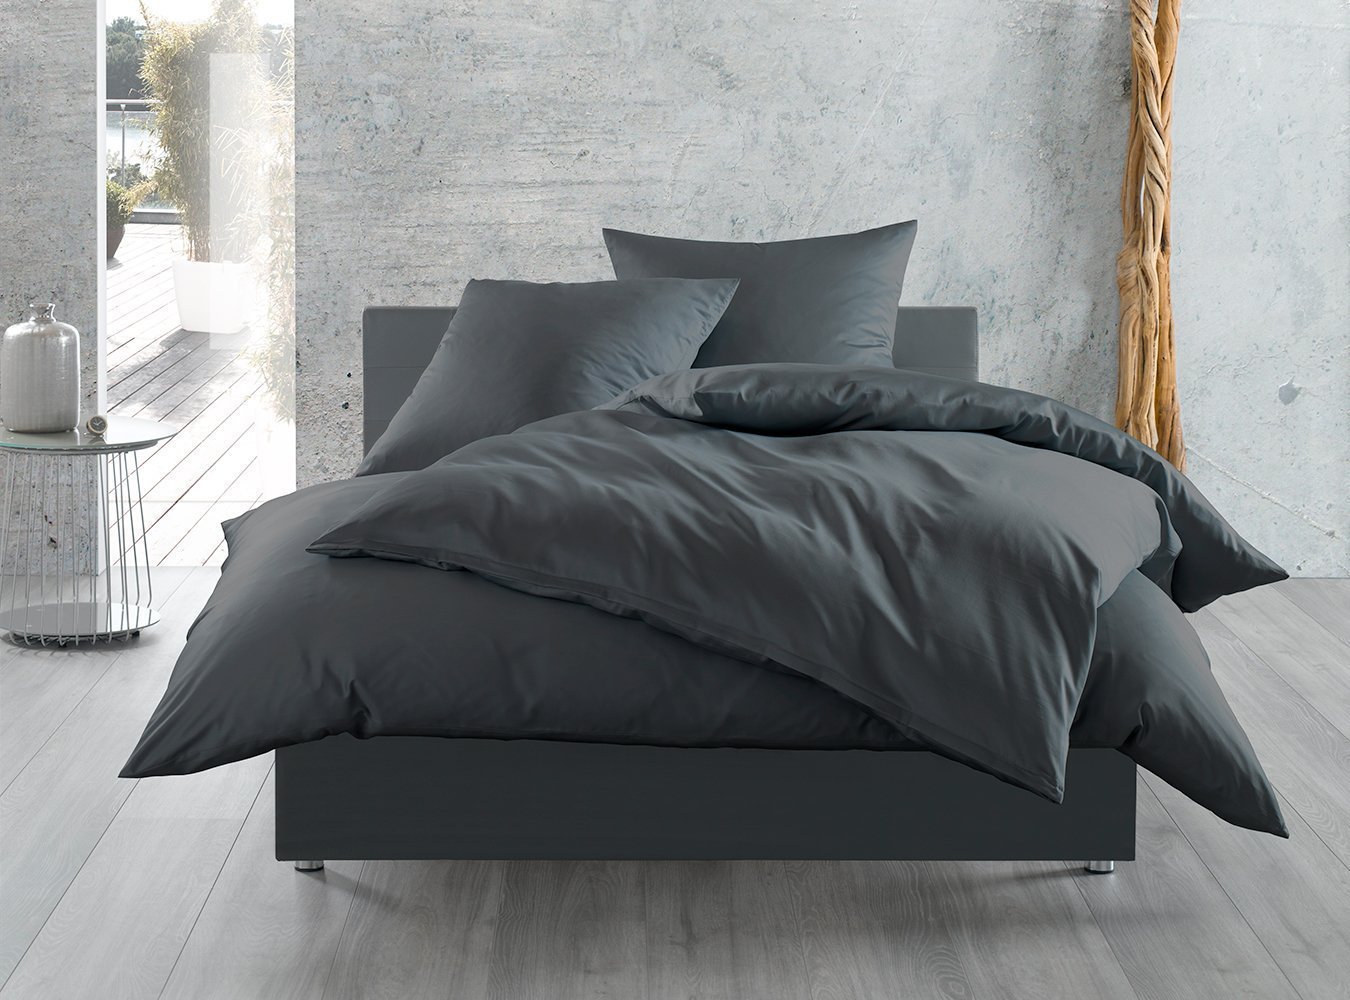 Baumwollsatin Bettwaesche-mit-Stil / anthrazit uni cm Bettbezug 135x200 Bettwäsche / Mako-Satin einfarbig